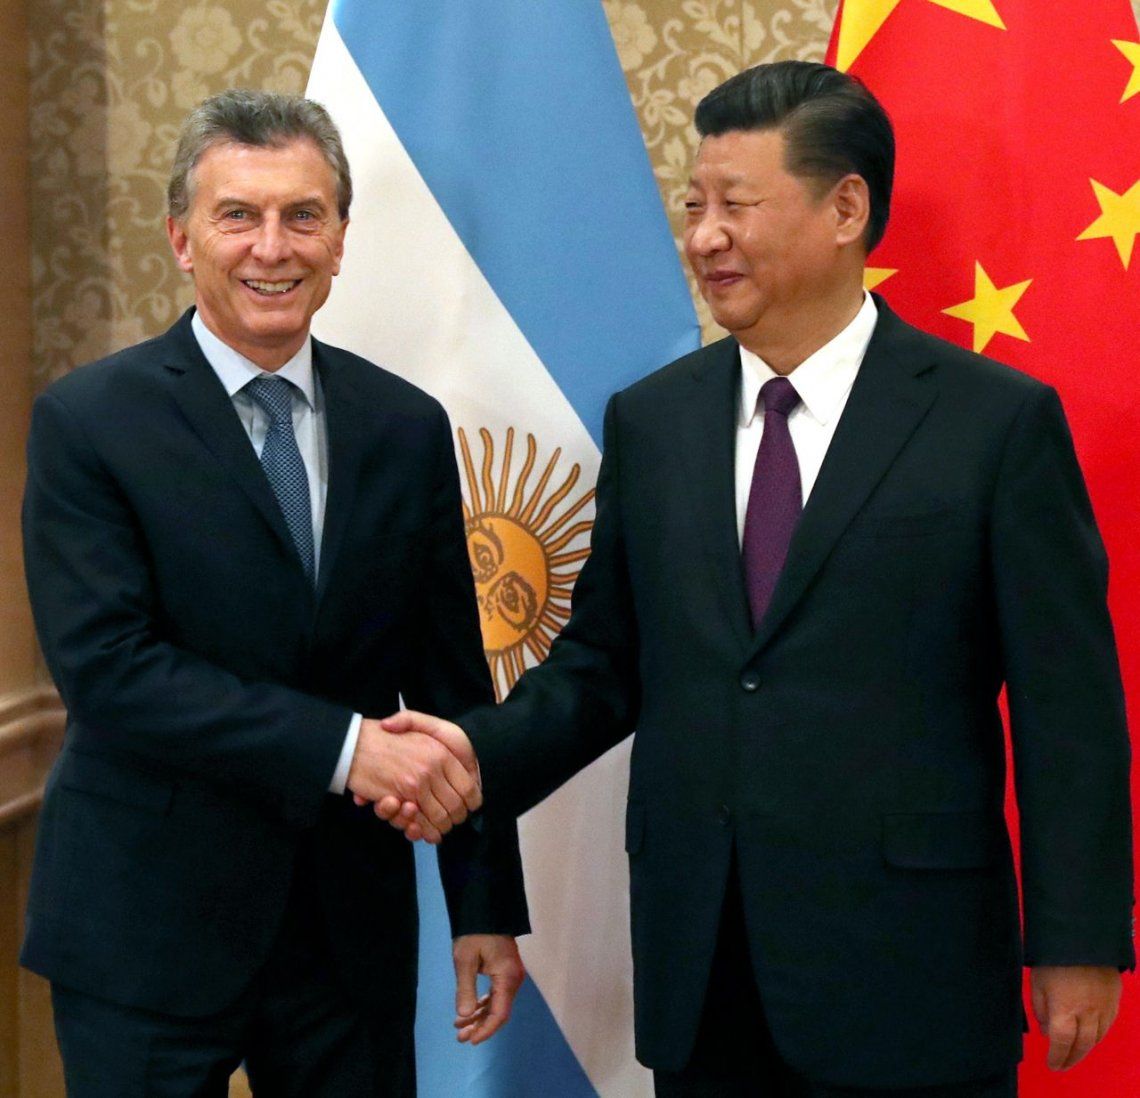 Cumbre del BRICS en Sudáfrica: Macri se reunió con Putin y Xi Jinping para captar inversiones